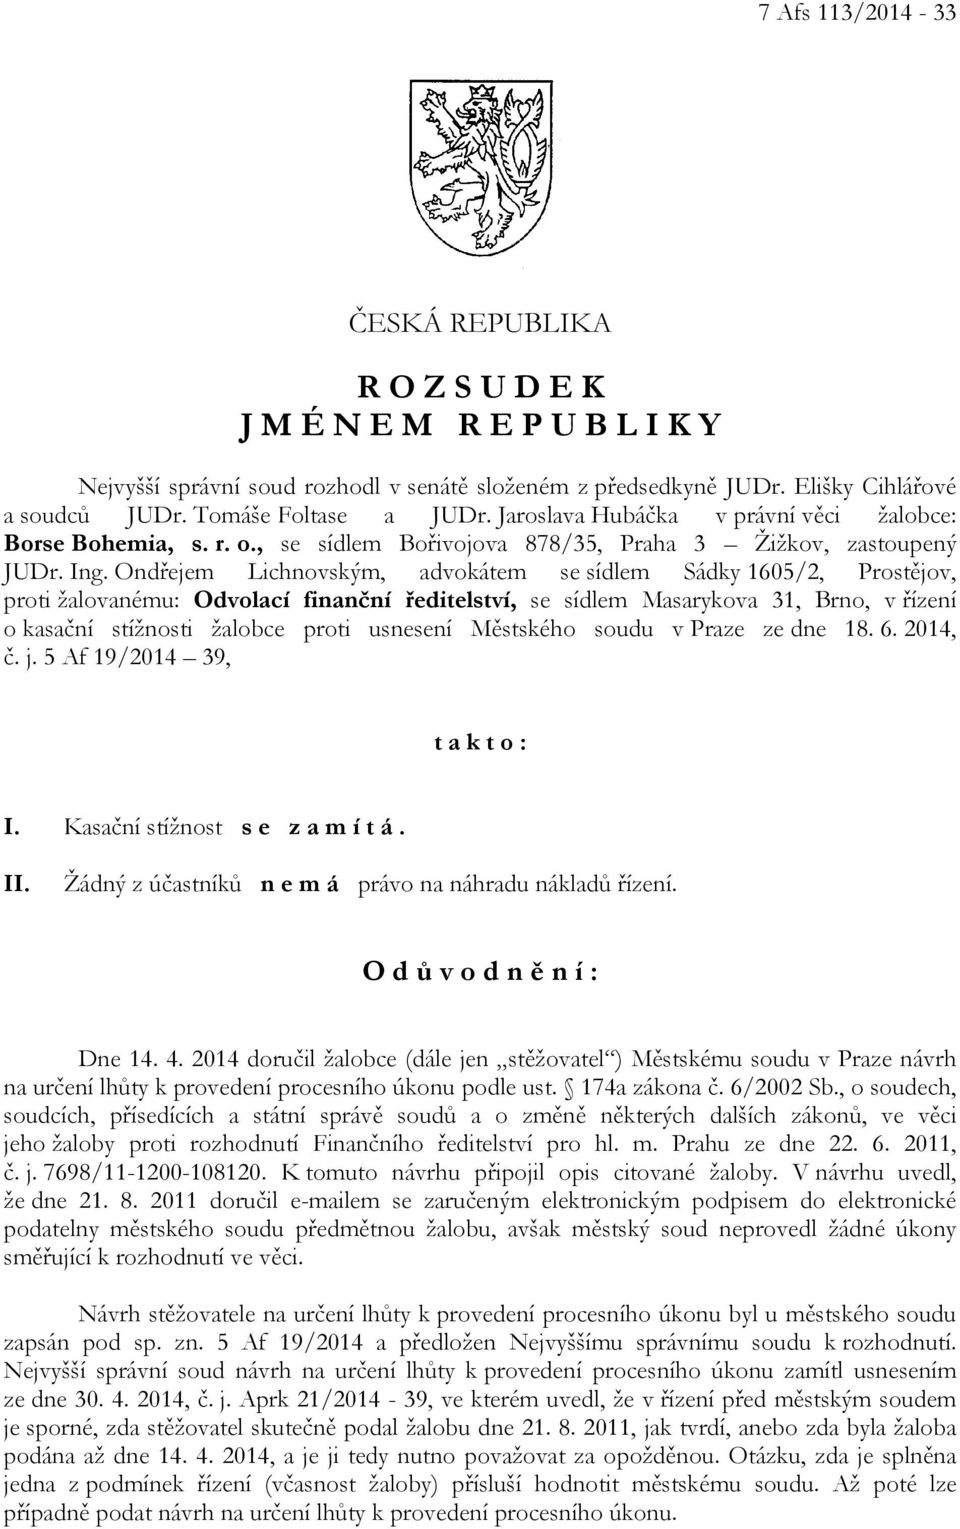 Ondřejem Lichnovským, advokátem se sídlem Sádky 1605/2, Prostějov, proti žalovanému: Odvolací finanční ředitelství, se sídlem Masarykova 31, Brno, v řízení o kasační stížnosti žalobce proti usnesení